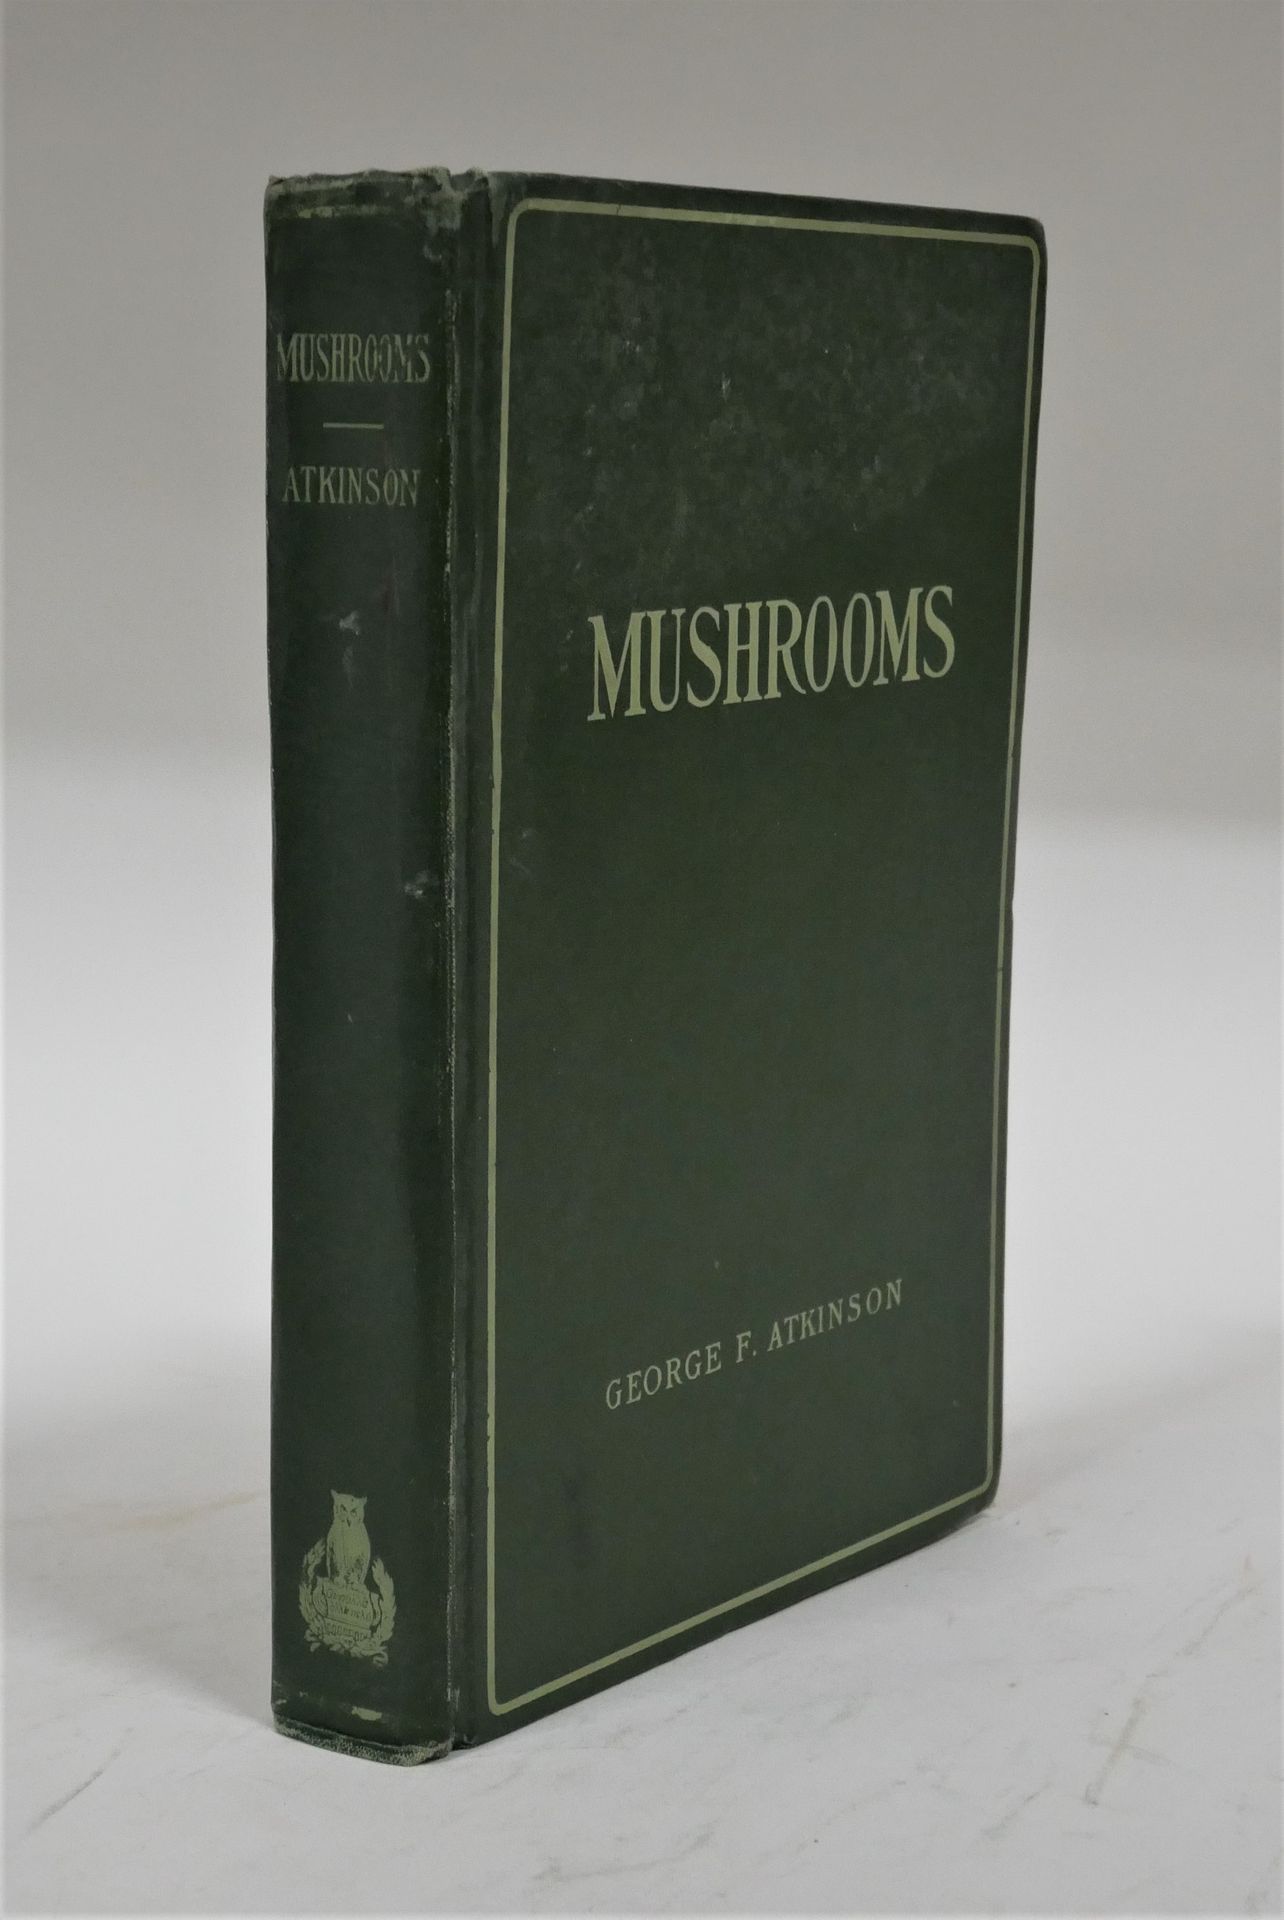 Null George Francis ATKINSON. 

Studies of america fungi mushrooms. 

230 ill. H&hellip;